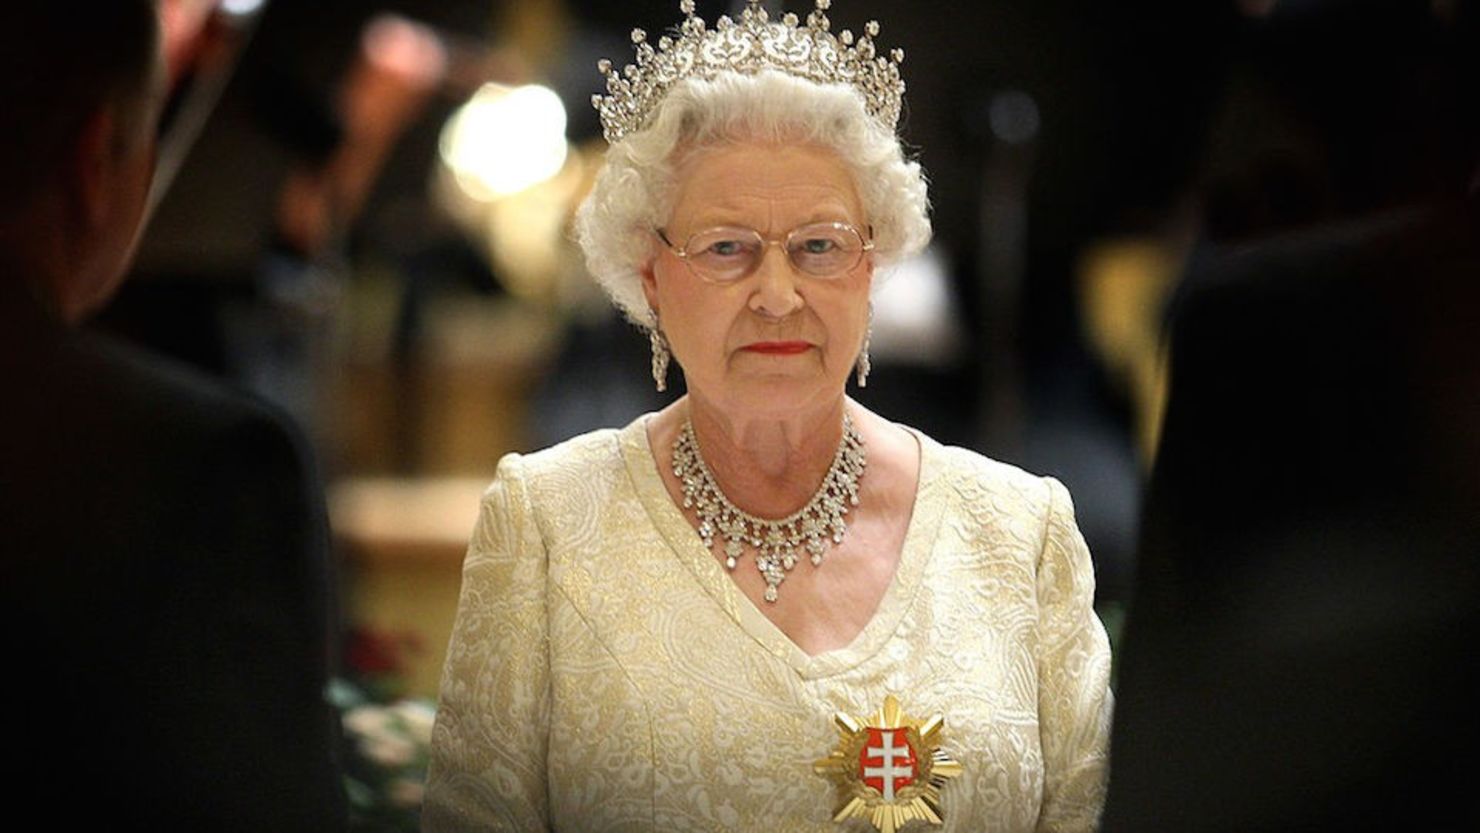 Oficialmente, la reina Isabel II es la jefa de Estado en 15 naciones en lo que se conoce como la Mancomunidad, incluyendo a Australia, Canadá y Nueva Zelandia. La soberana aparece aquí en una imagen de archivo en Bratislava, Eslovaquia, el 23 de octubre de 2008,.